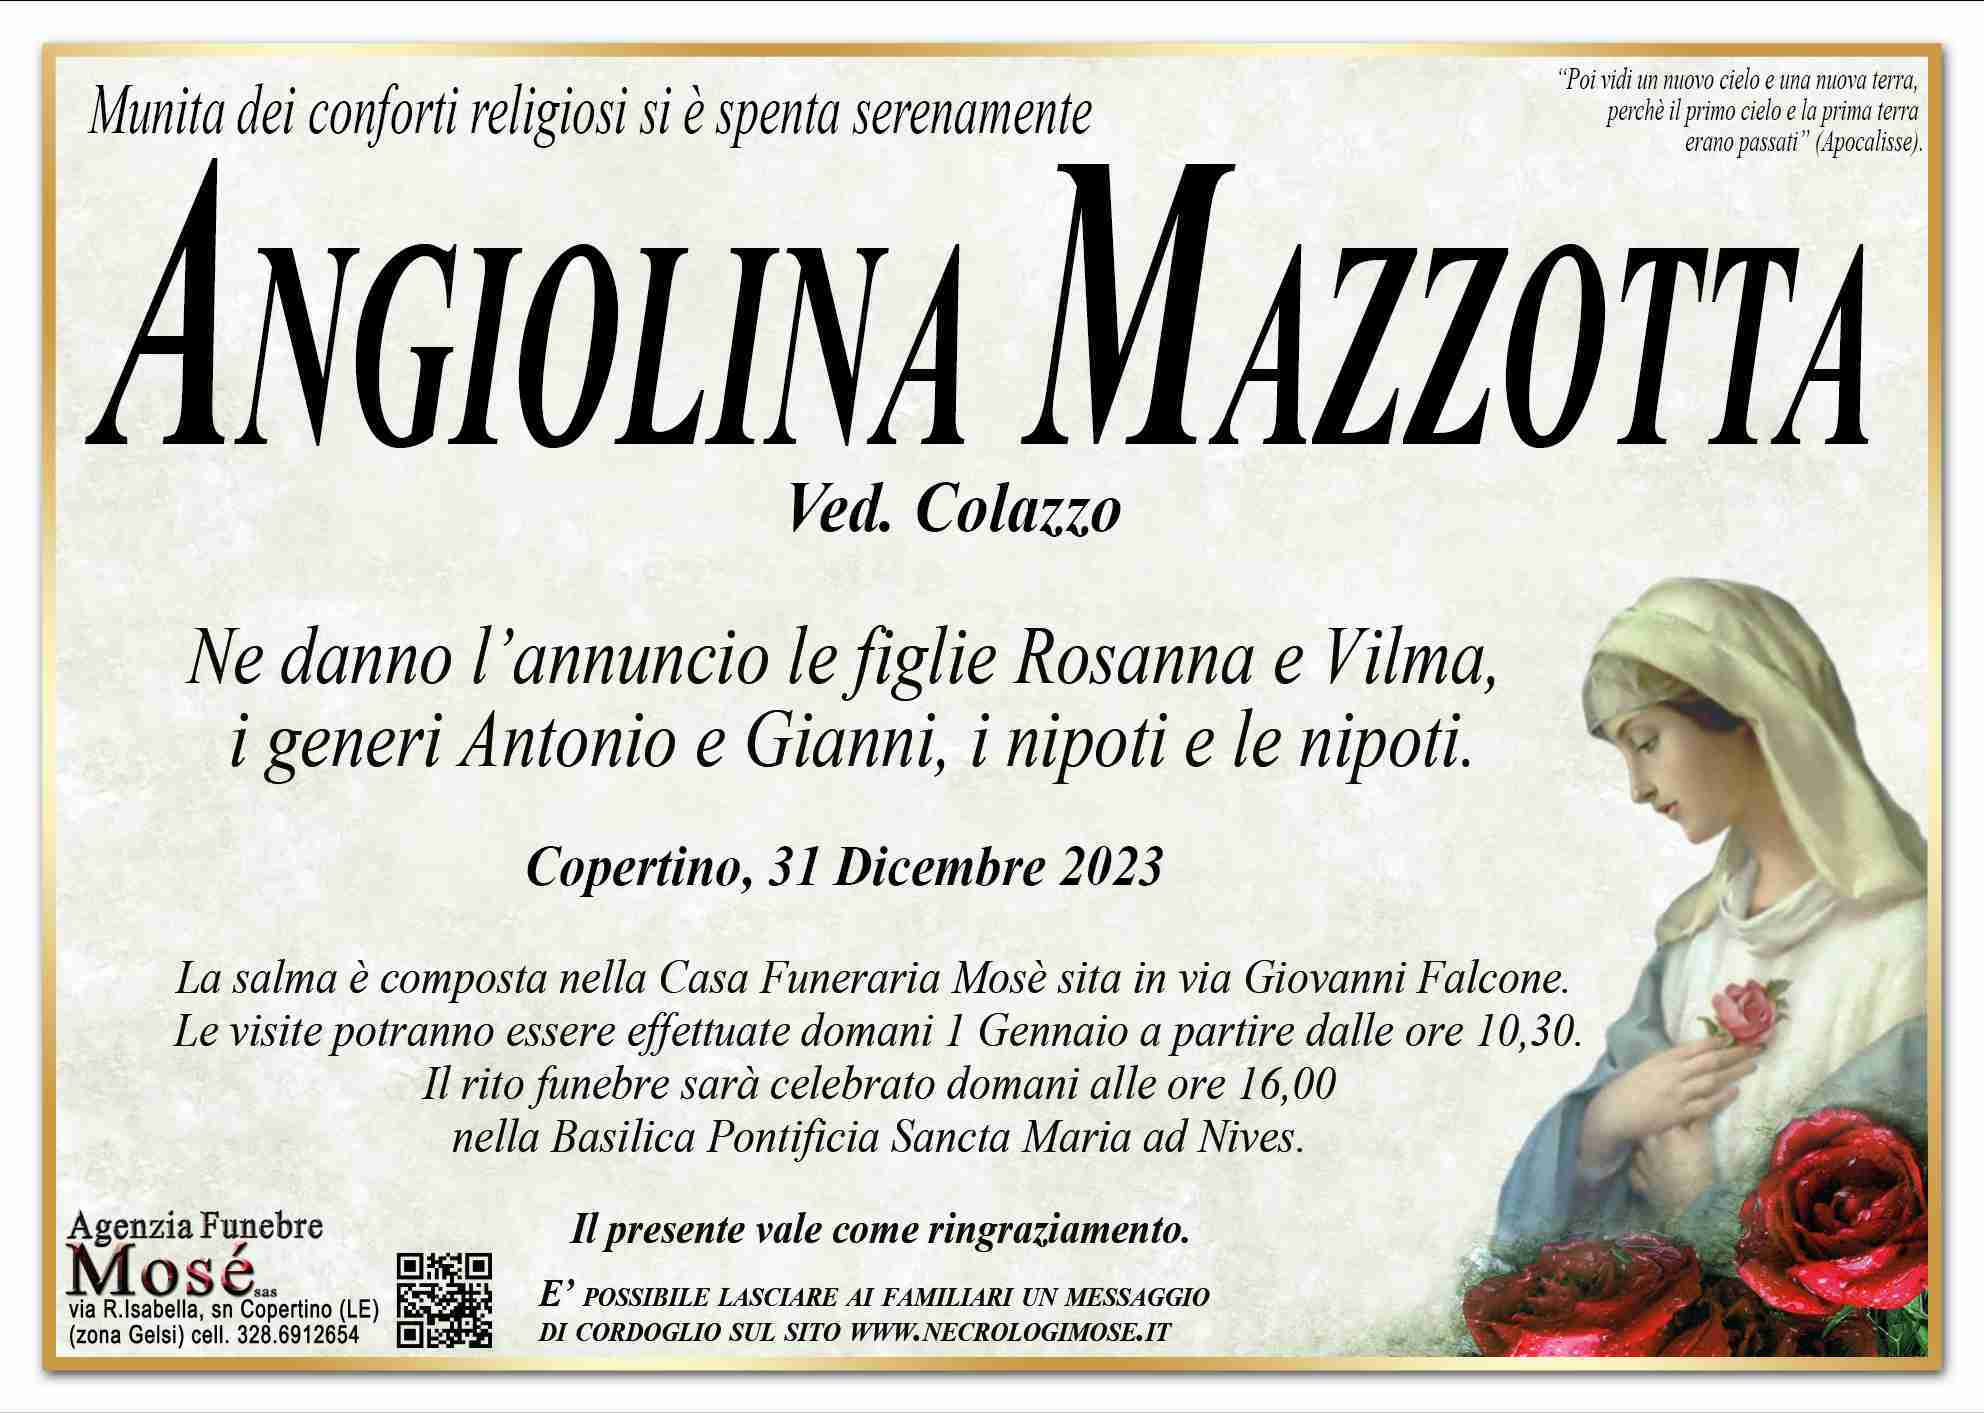 Angiolina Mazzotta